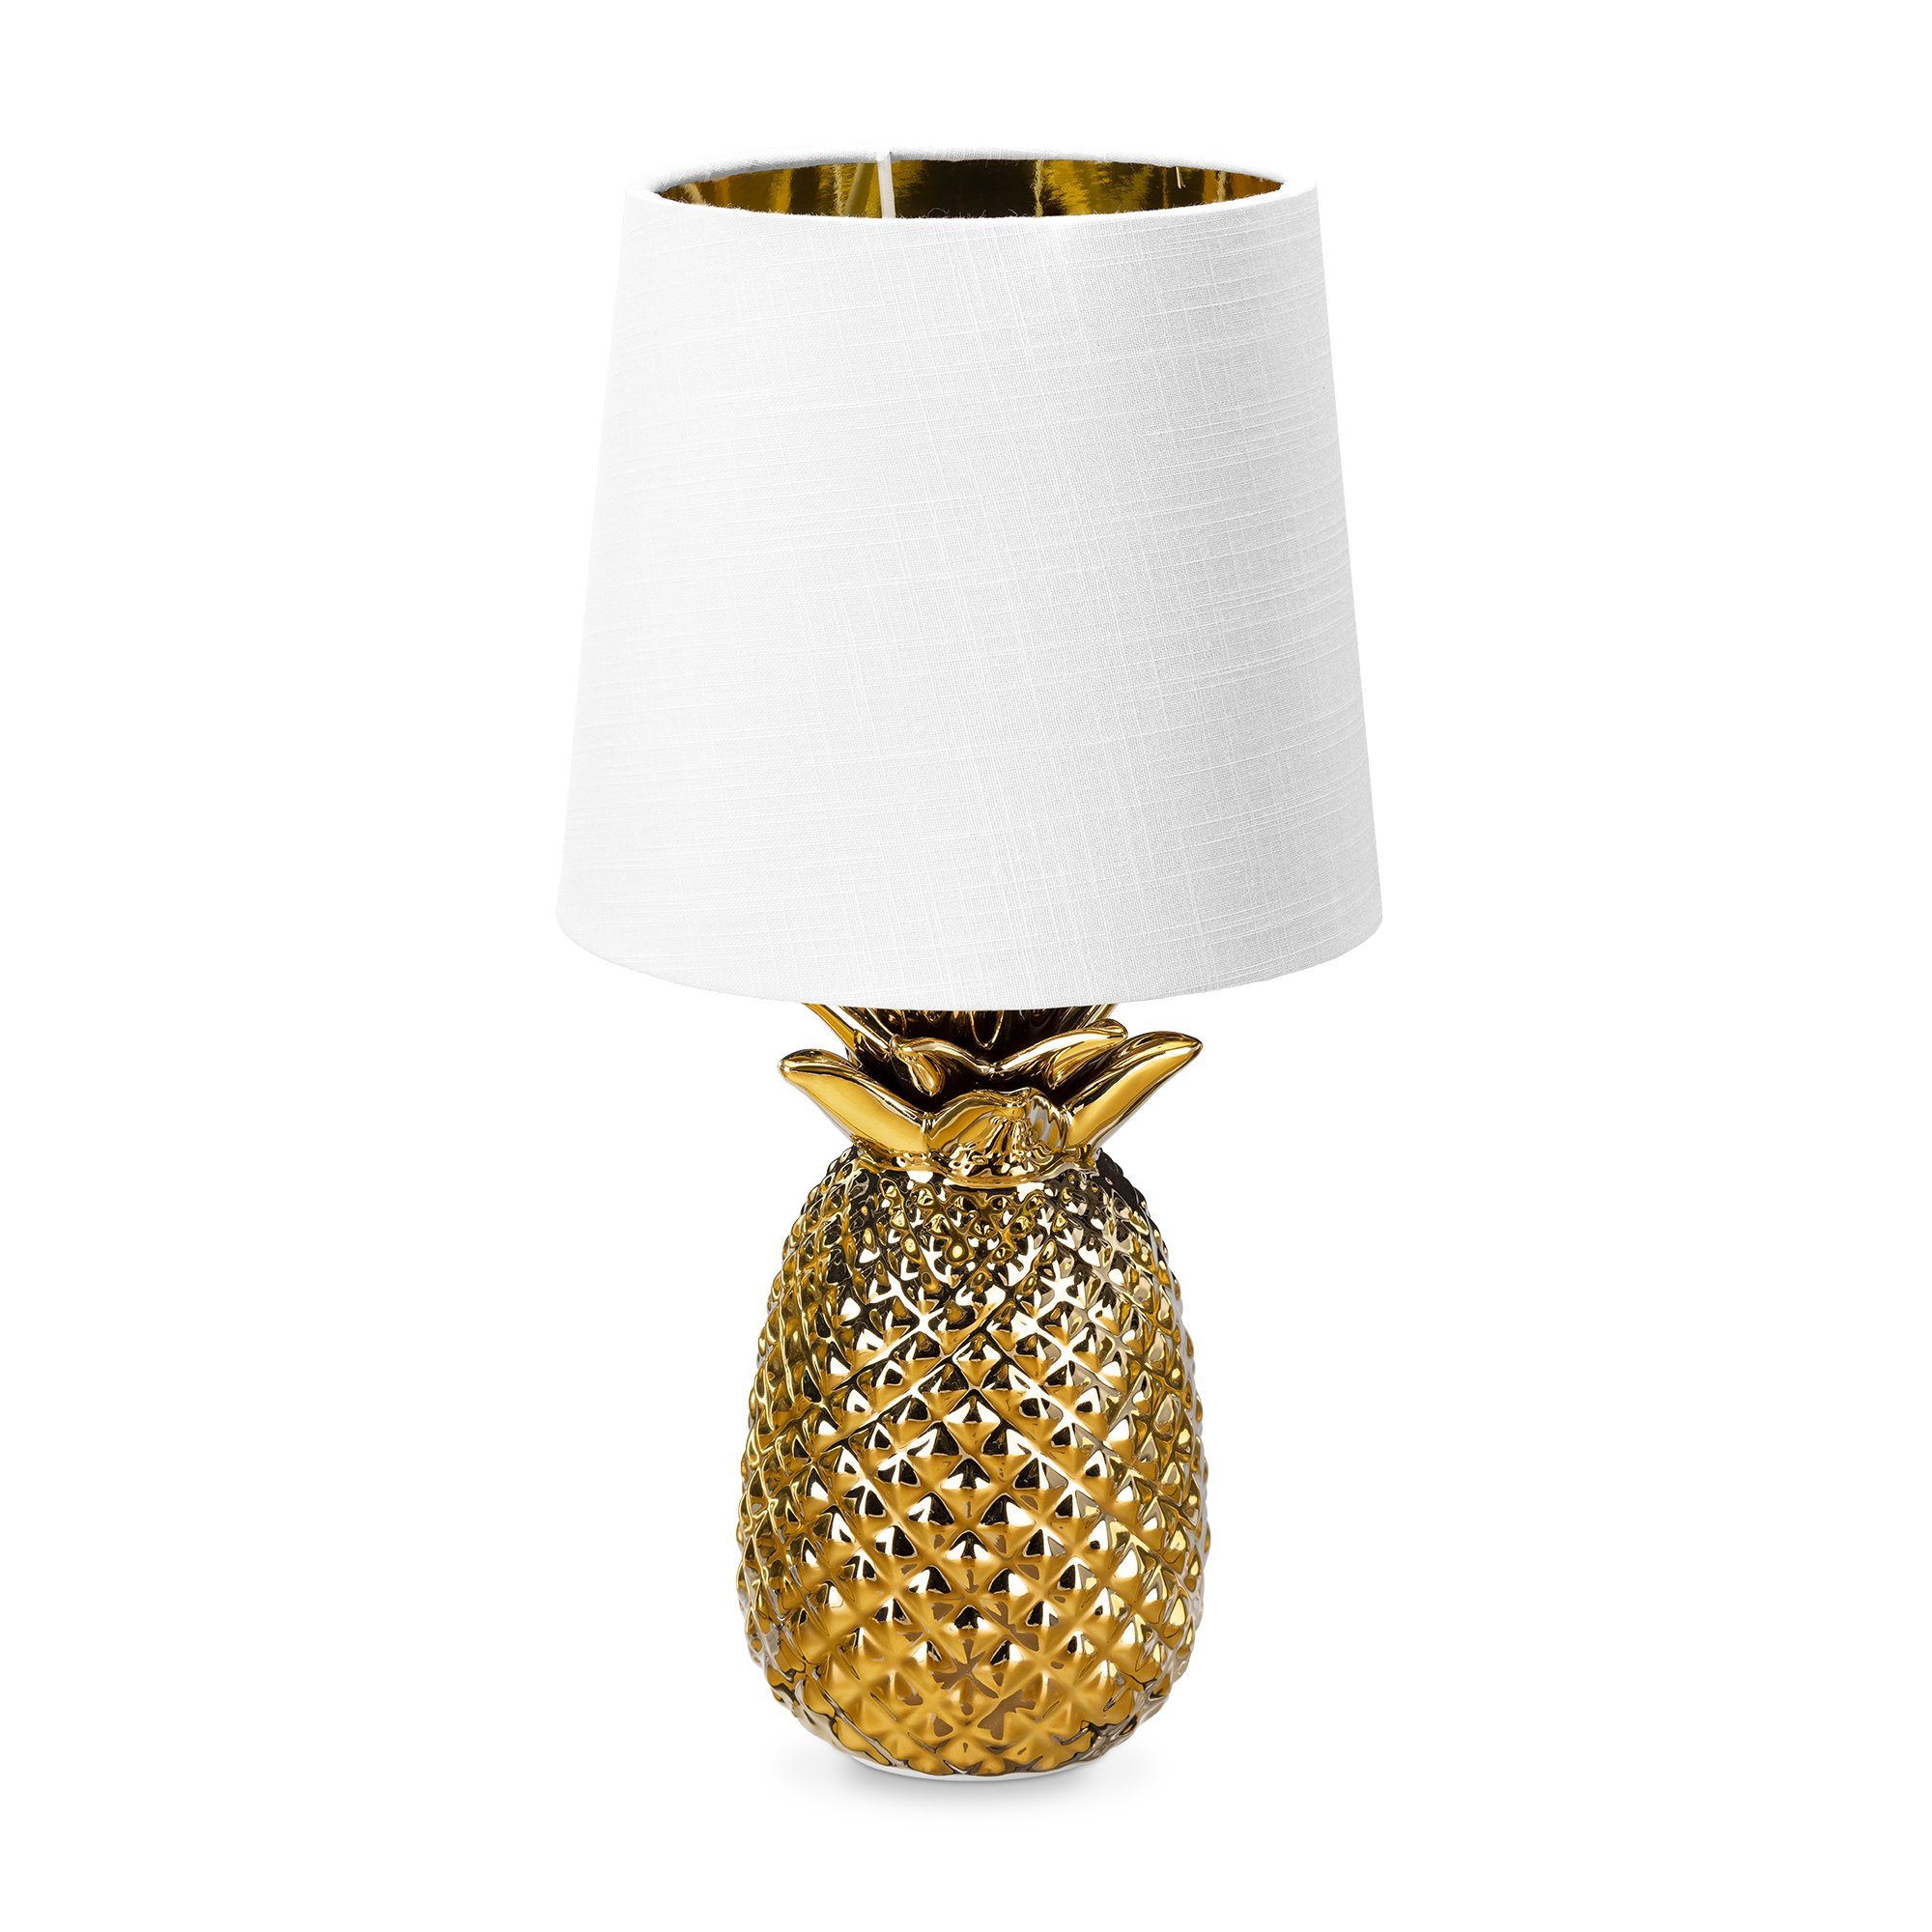 Navaris Tischleuchte Tischlampe Ananas Design - 35cm hoch - Dekolampe mit E14 Gewinde Gold